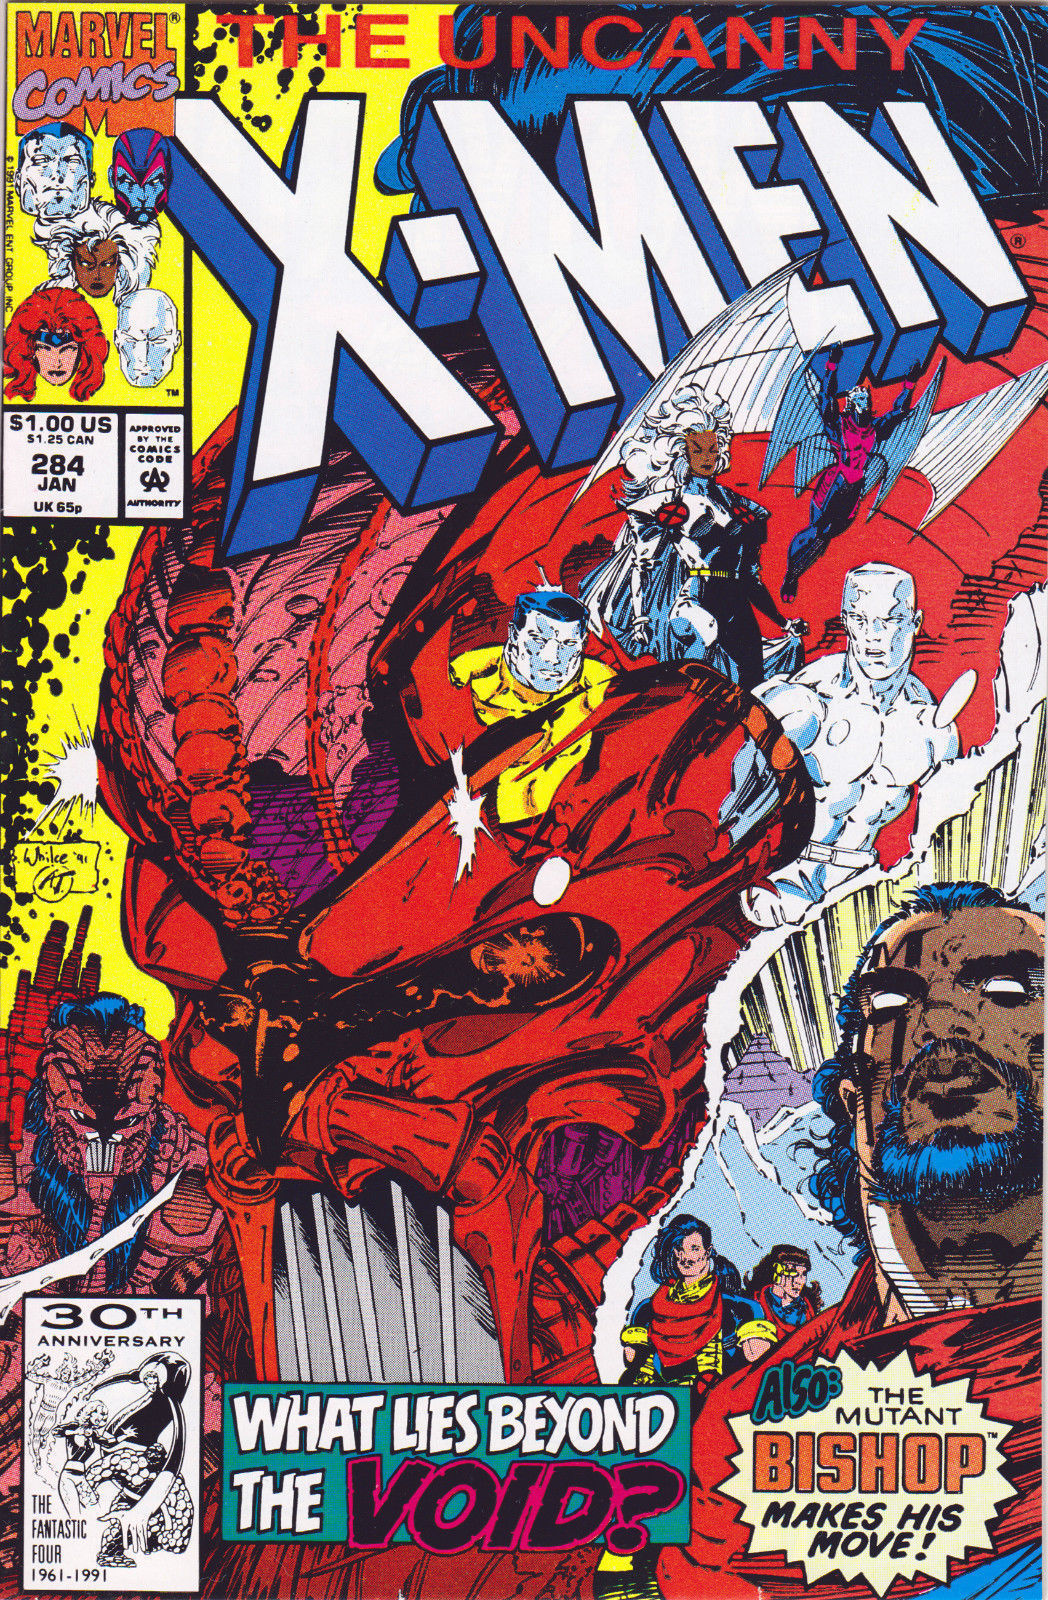 UNCANNY X-MEN #284 (1ST PRINT) COMIC BOOK ~ Whilce Portacio Art ~ Marvel Comics